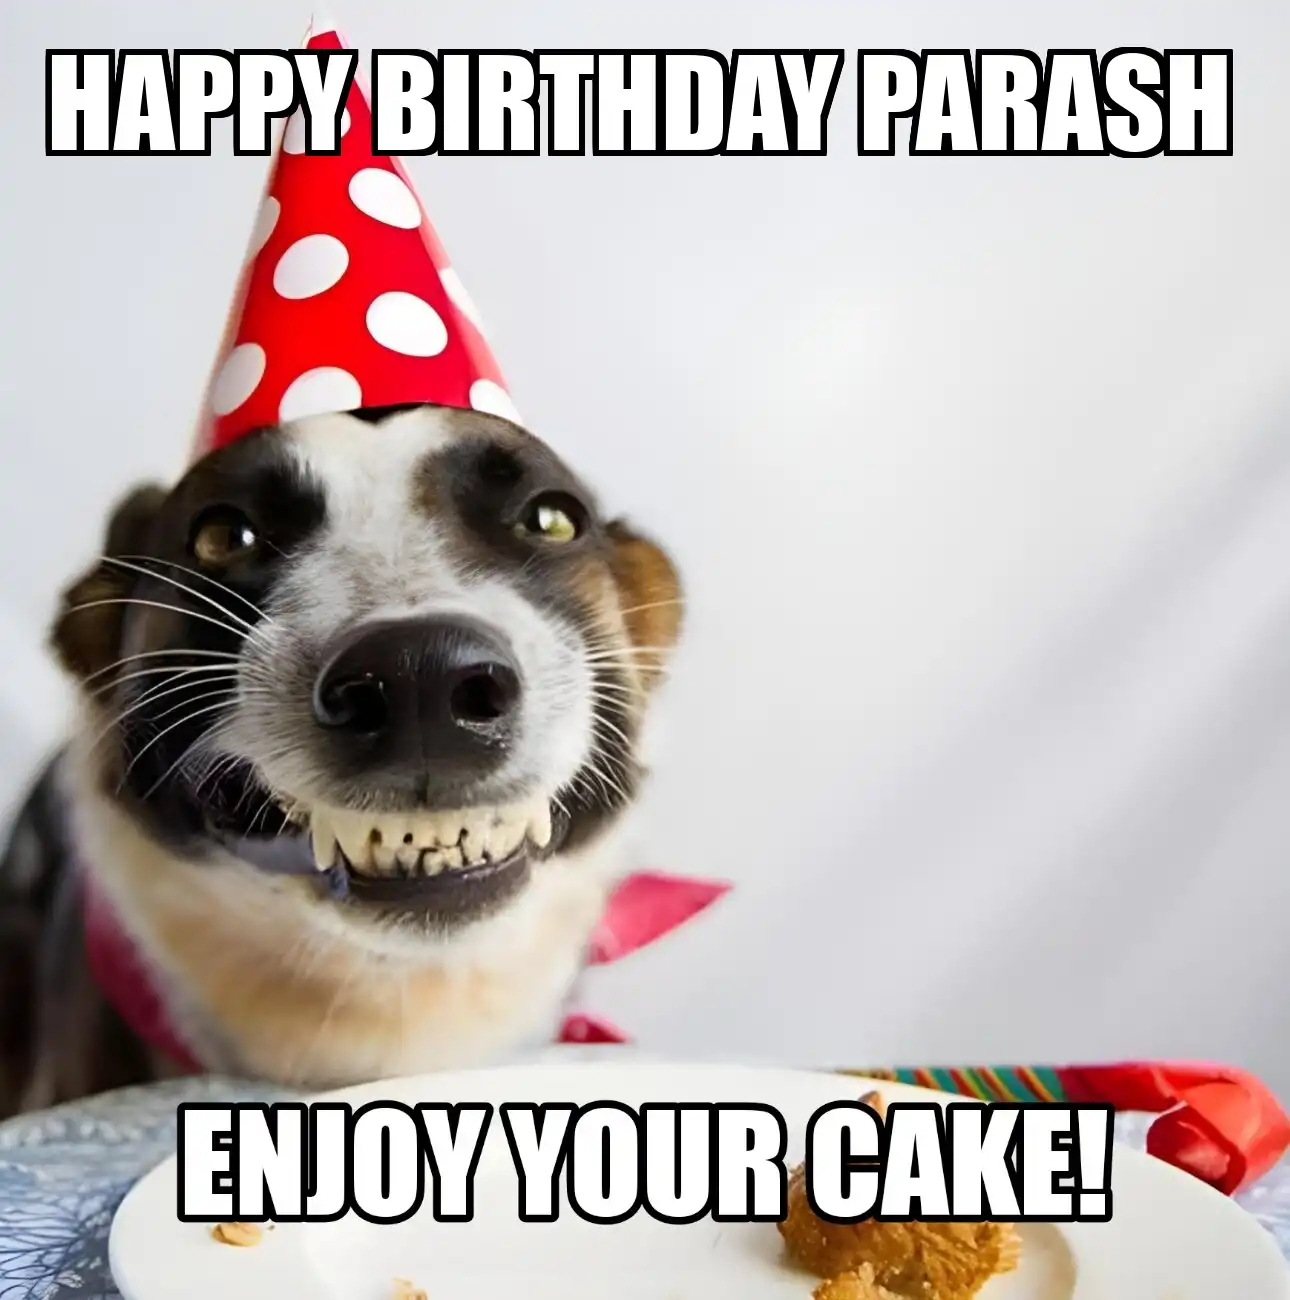 Happy Birthday Parash Enjoy Your Cake Dog Meme